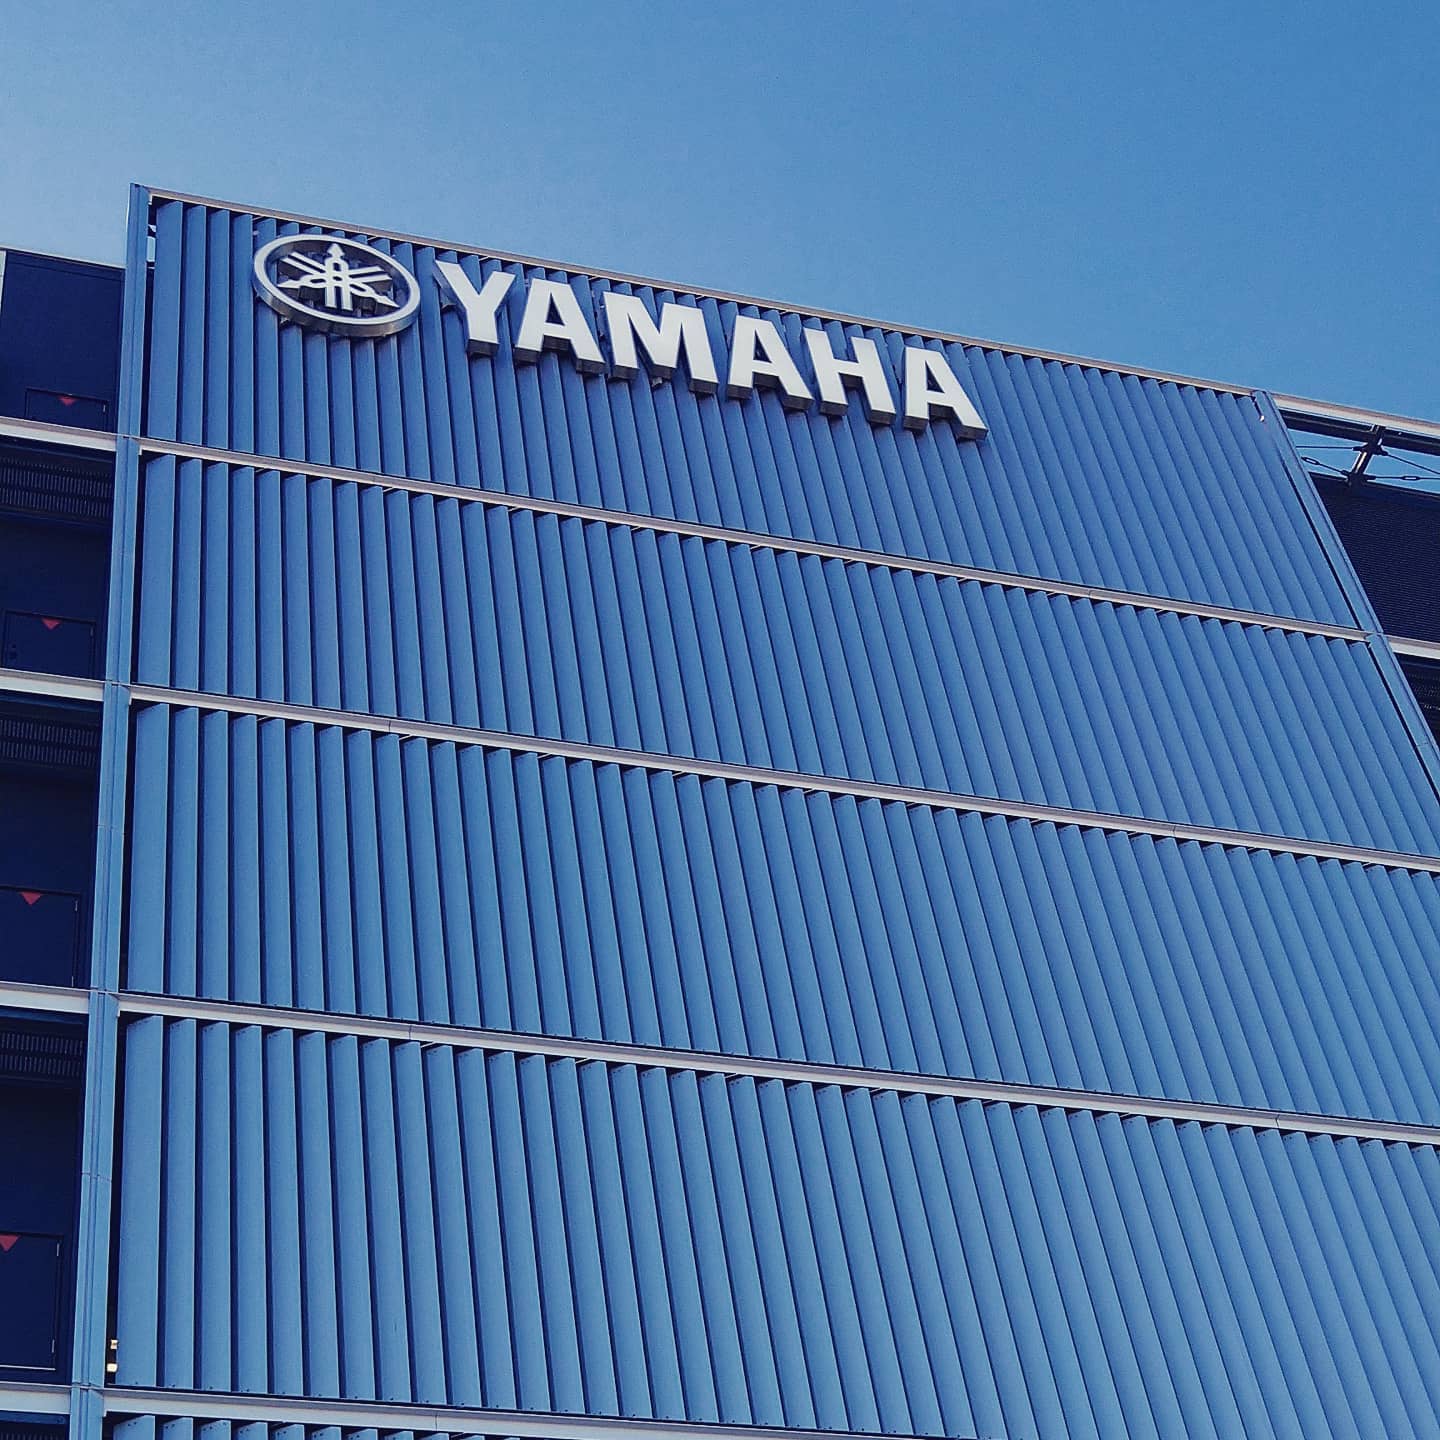 YAMAHA浜松本社イノベーションロードへの視察（2019.11）⁣
⁣#YAMAHA #NDPA